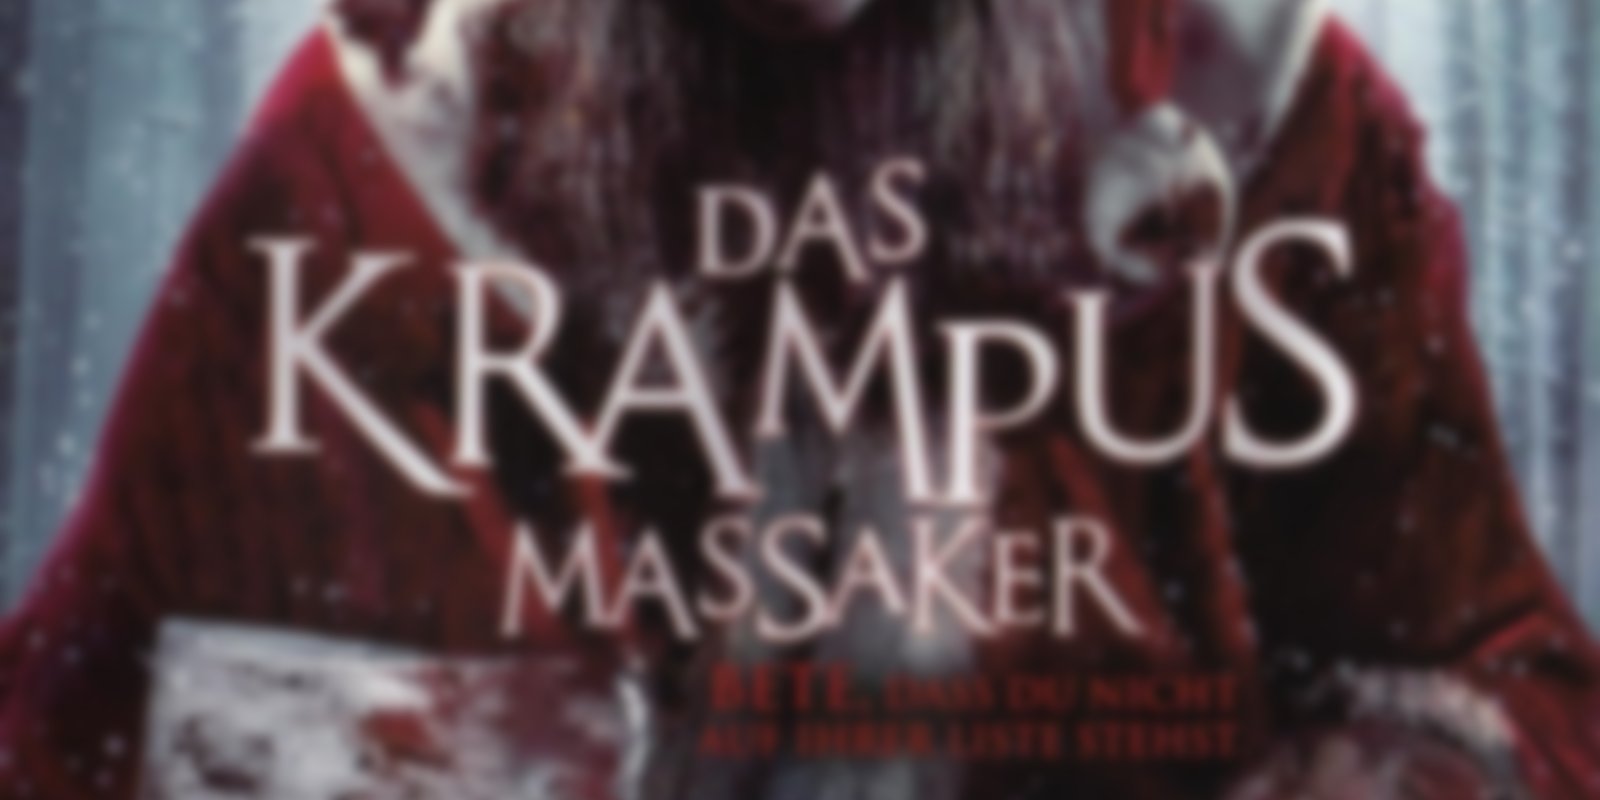 Mother Krampus - Das Krampus Massaker